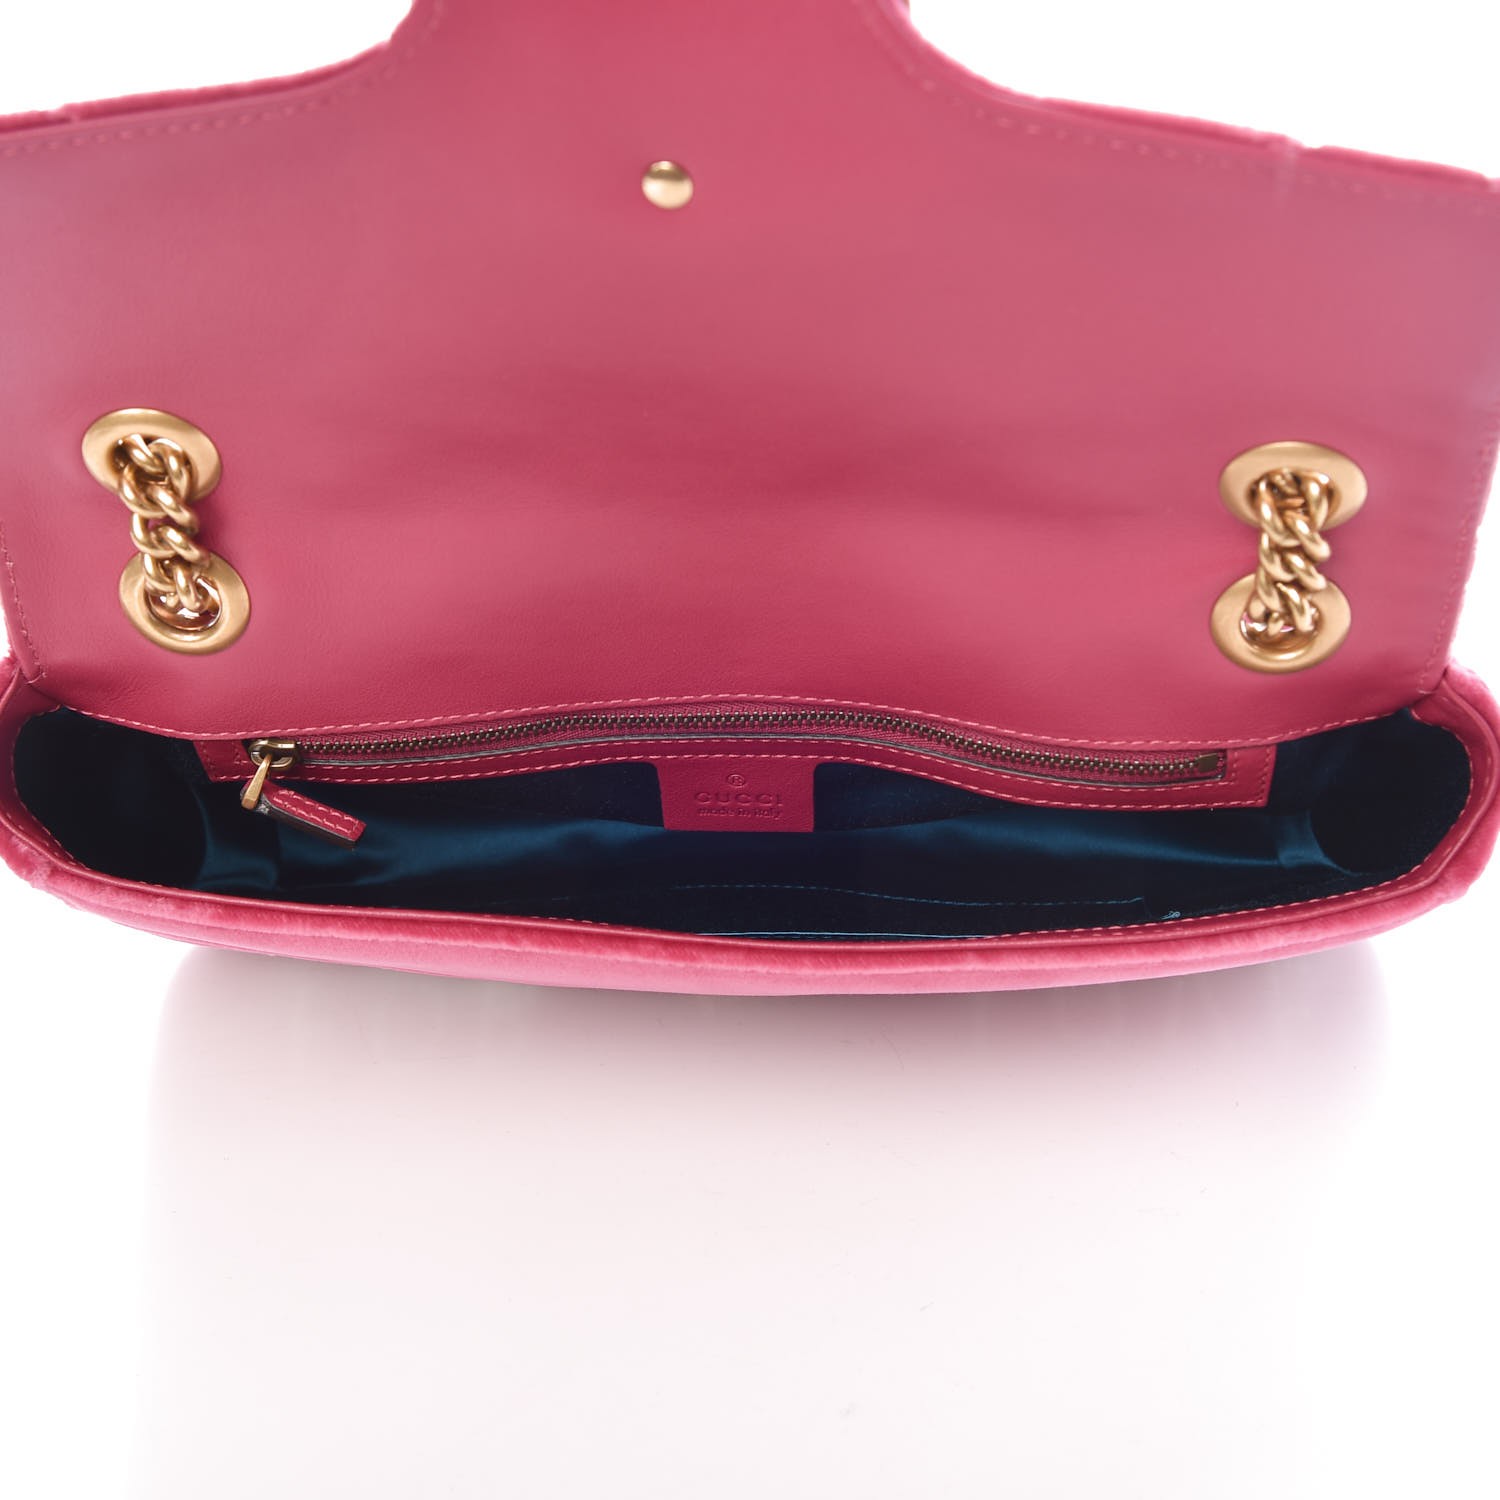 GUCCI Velvet Embroidered Medium Blind For Love Marmont Shoulder Bag Pink 332795